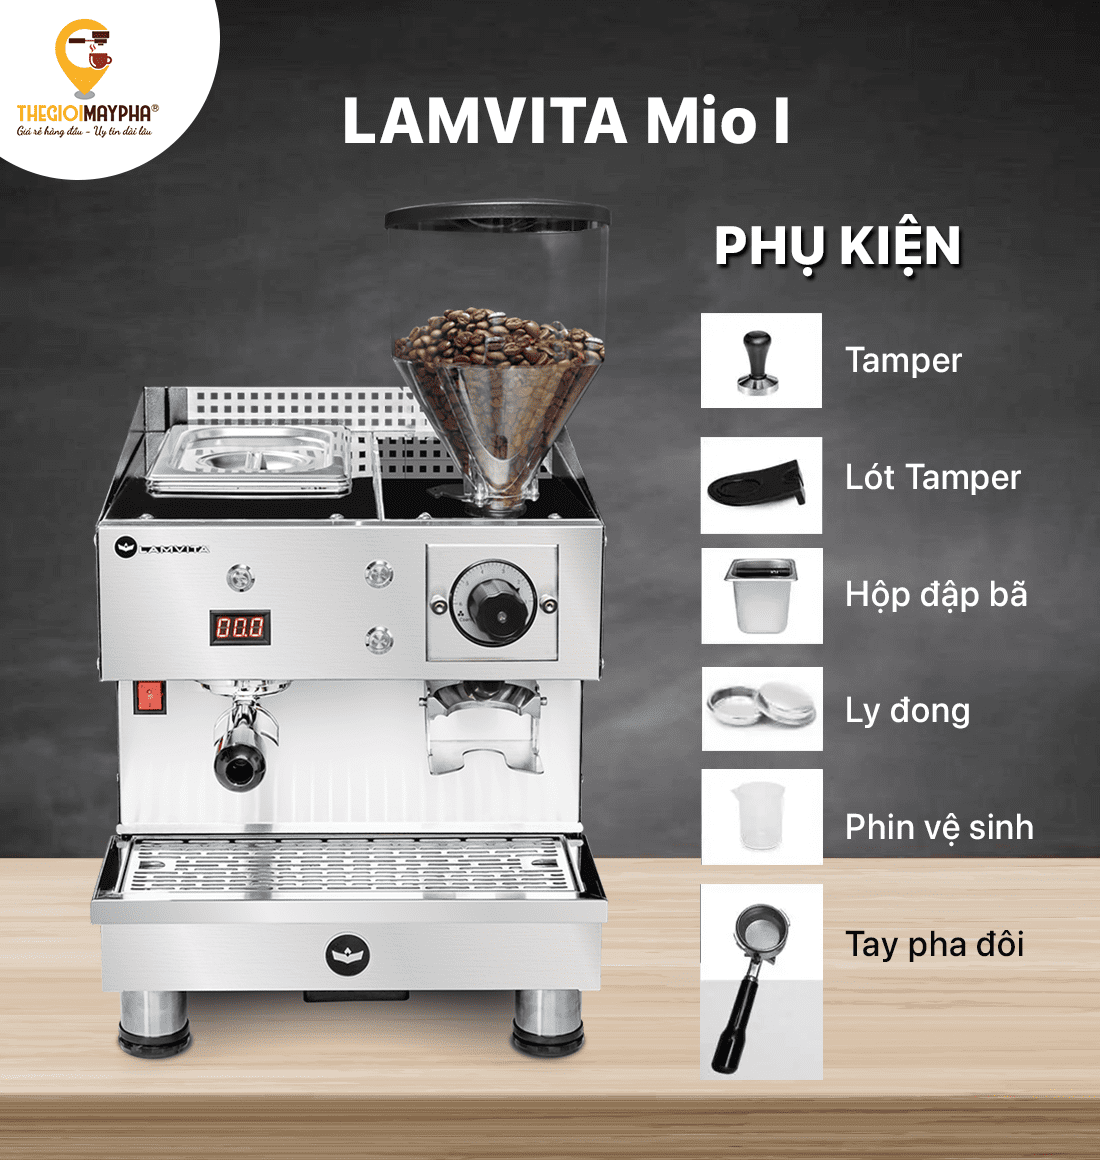 Máy pha cà phê Lamvita Mio I